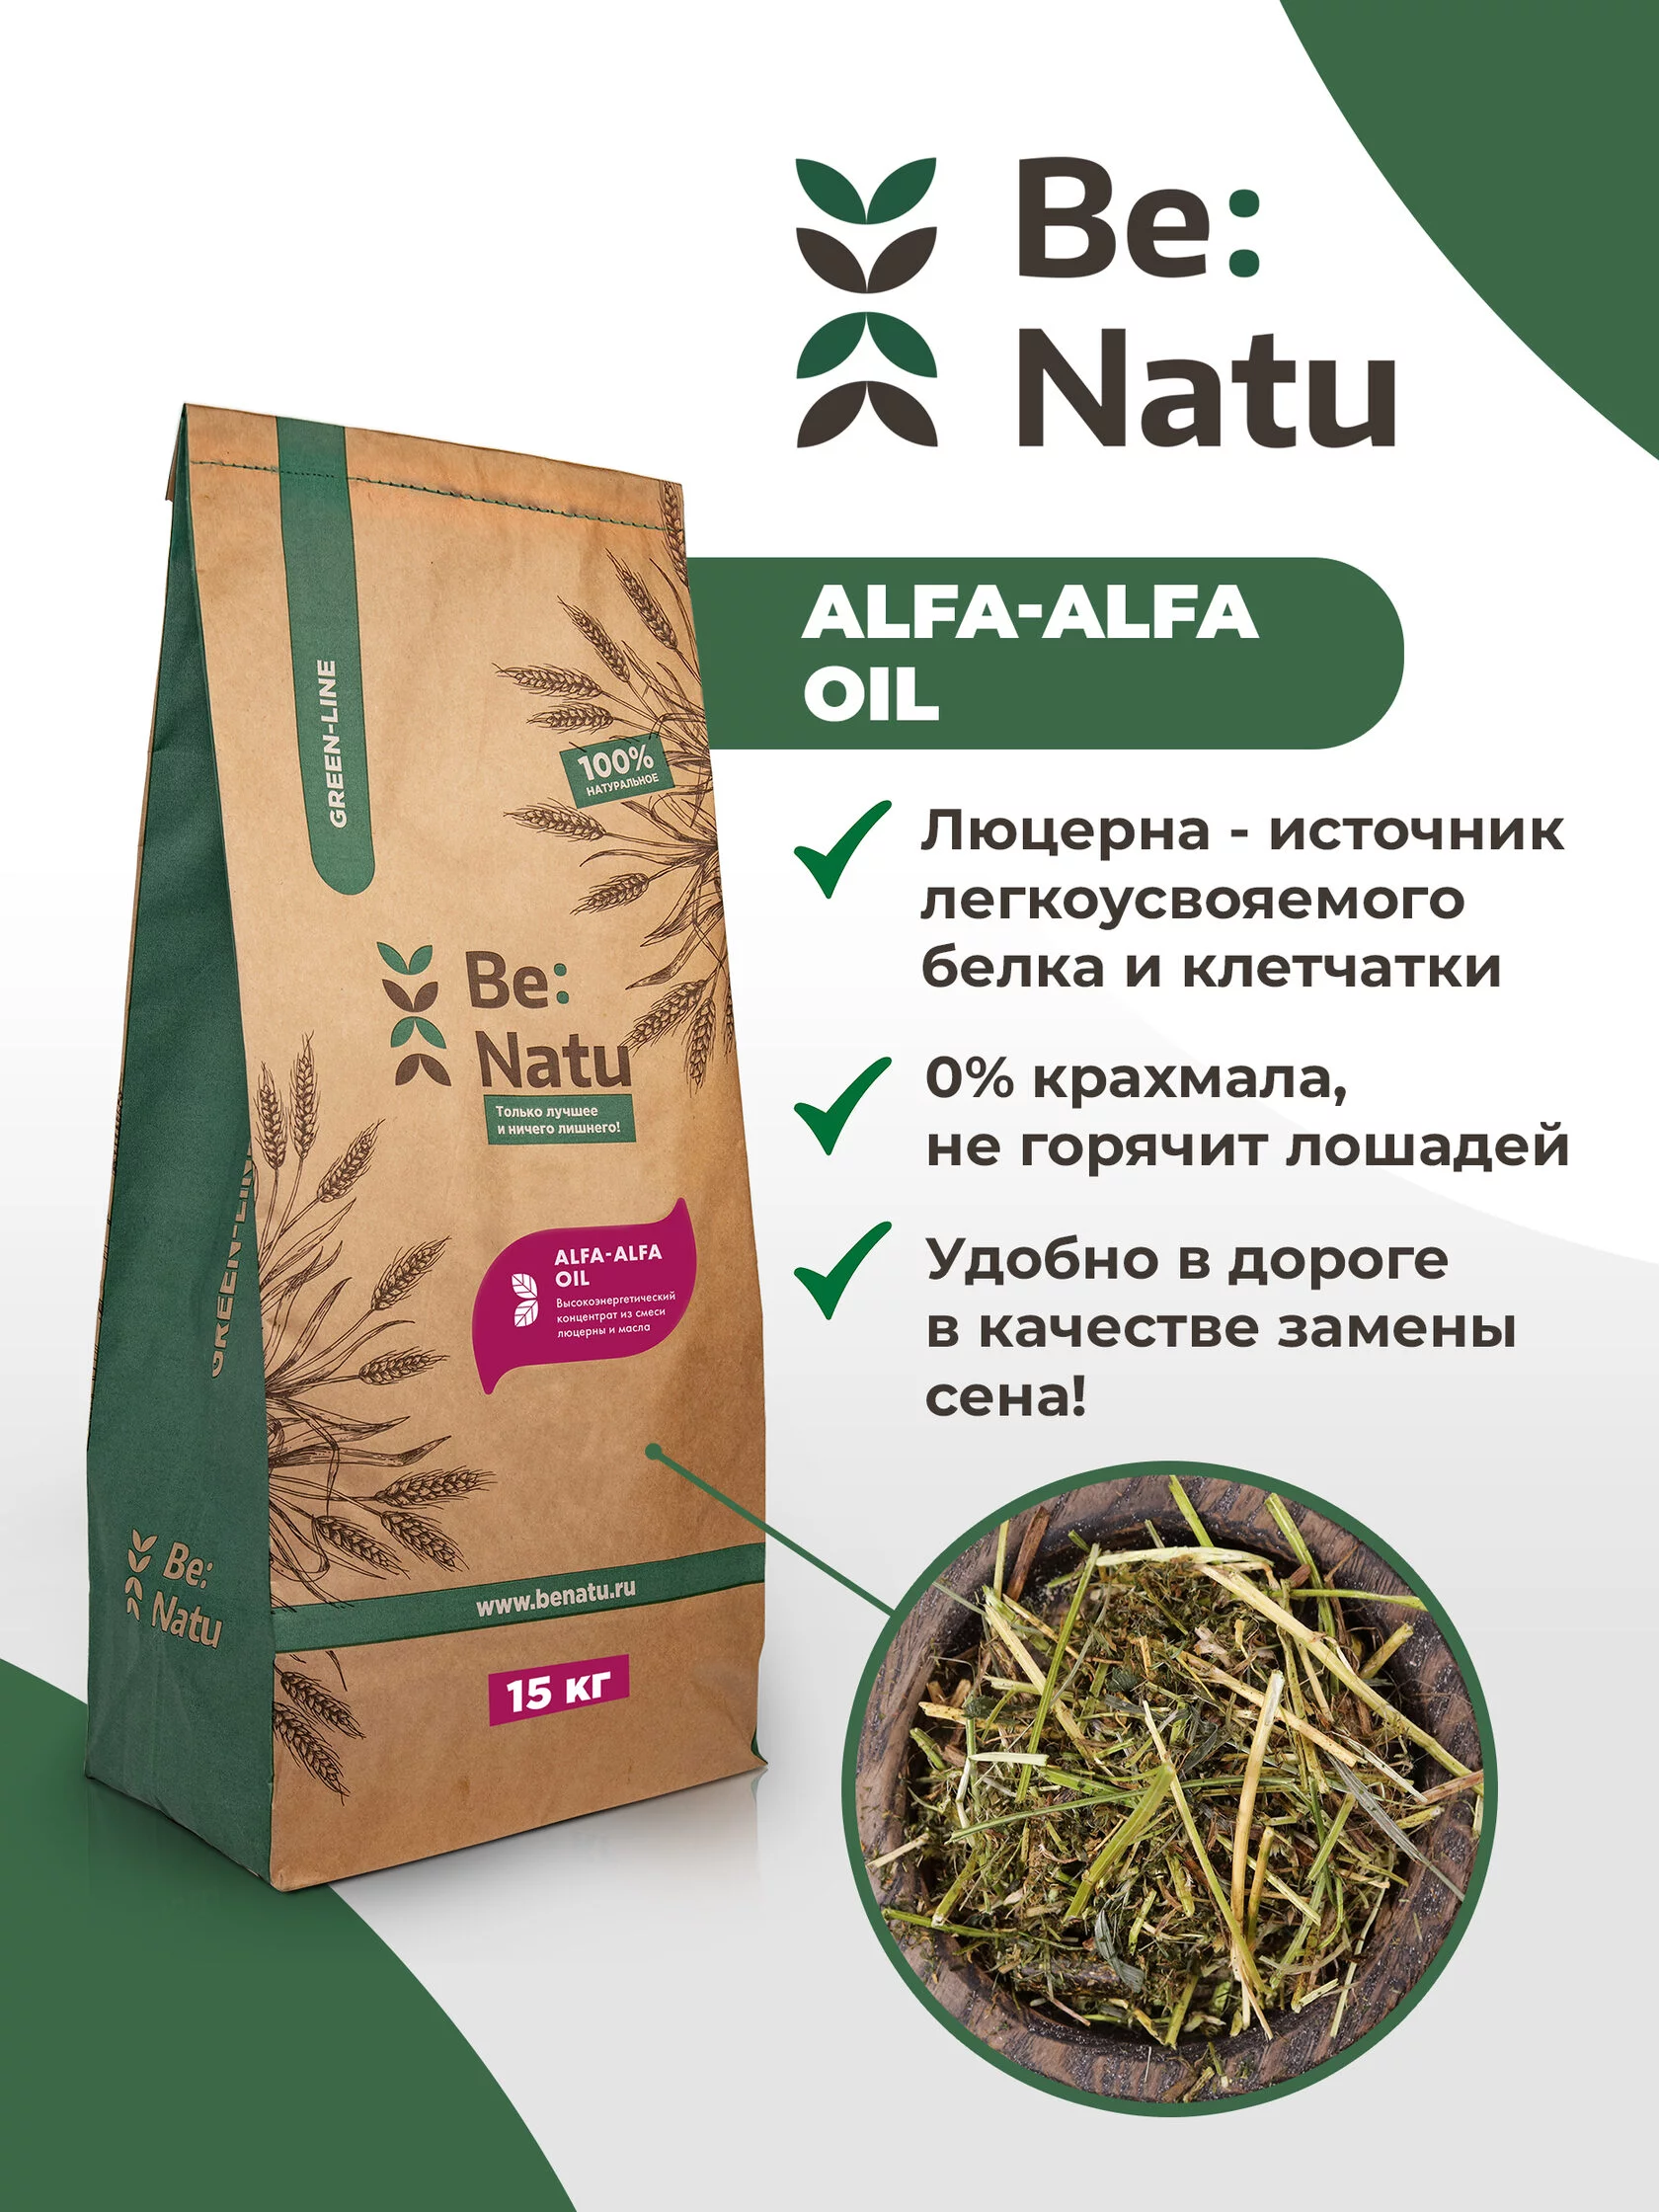  Be:Natu Alfa-Alfa oil 15 